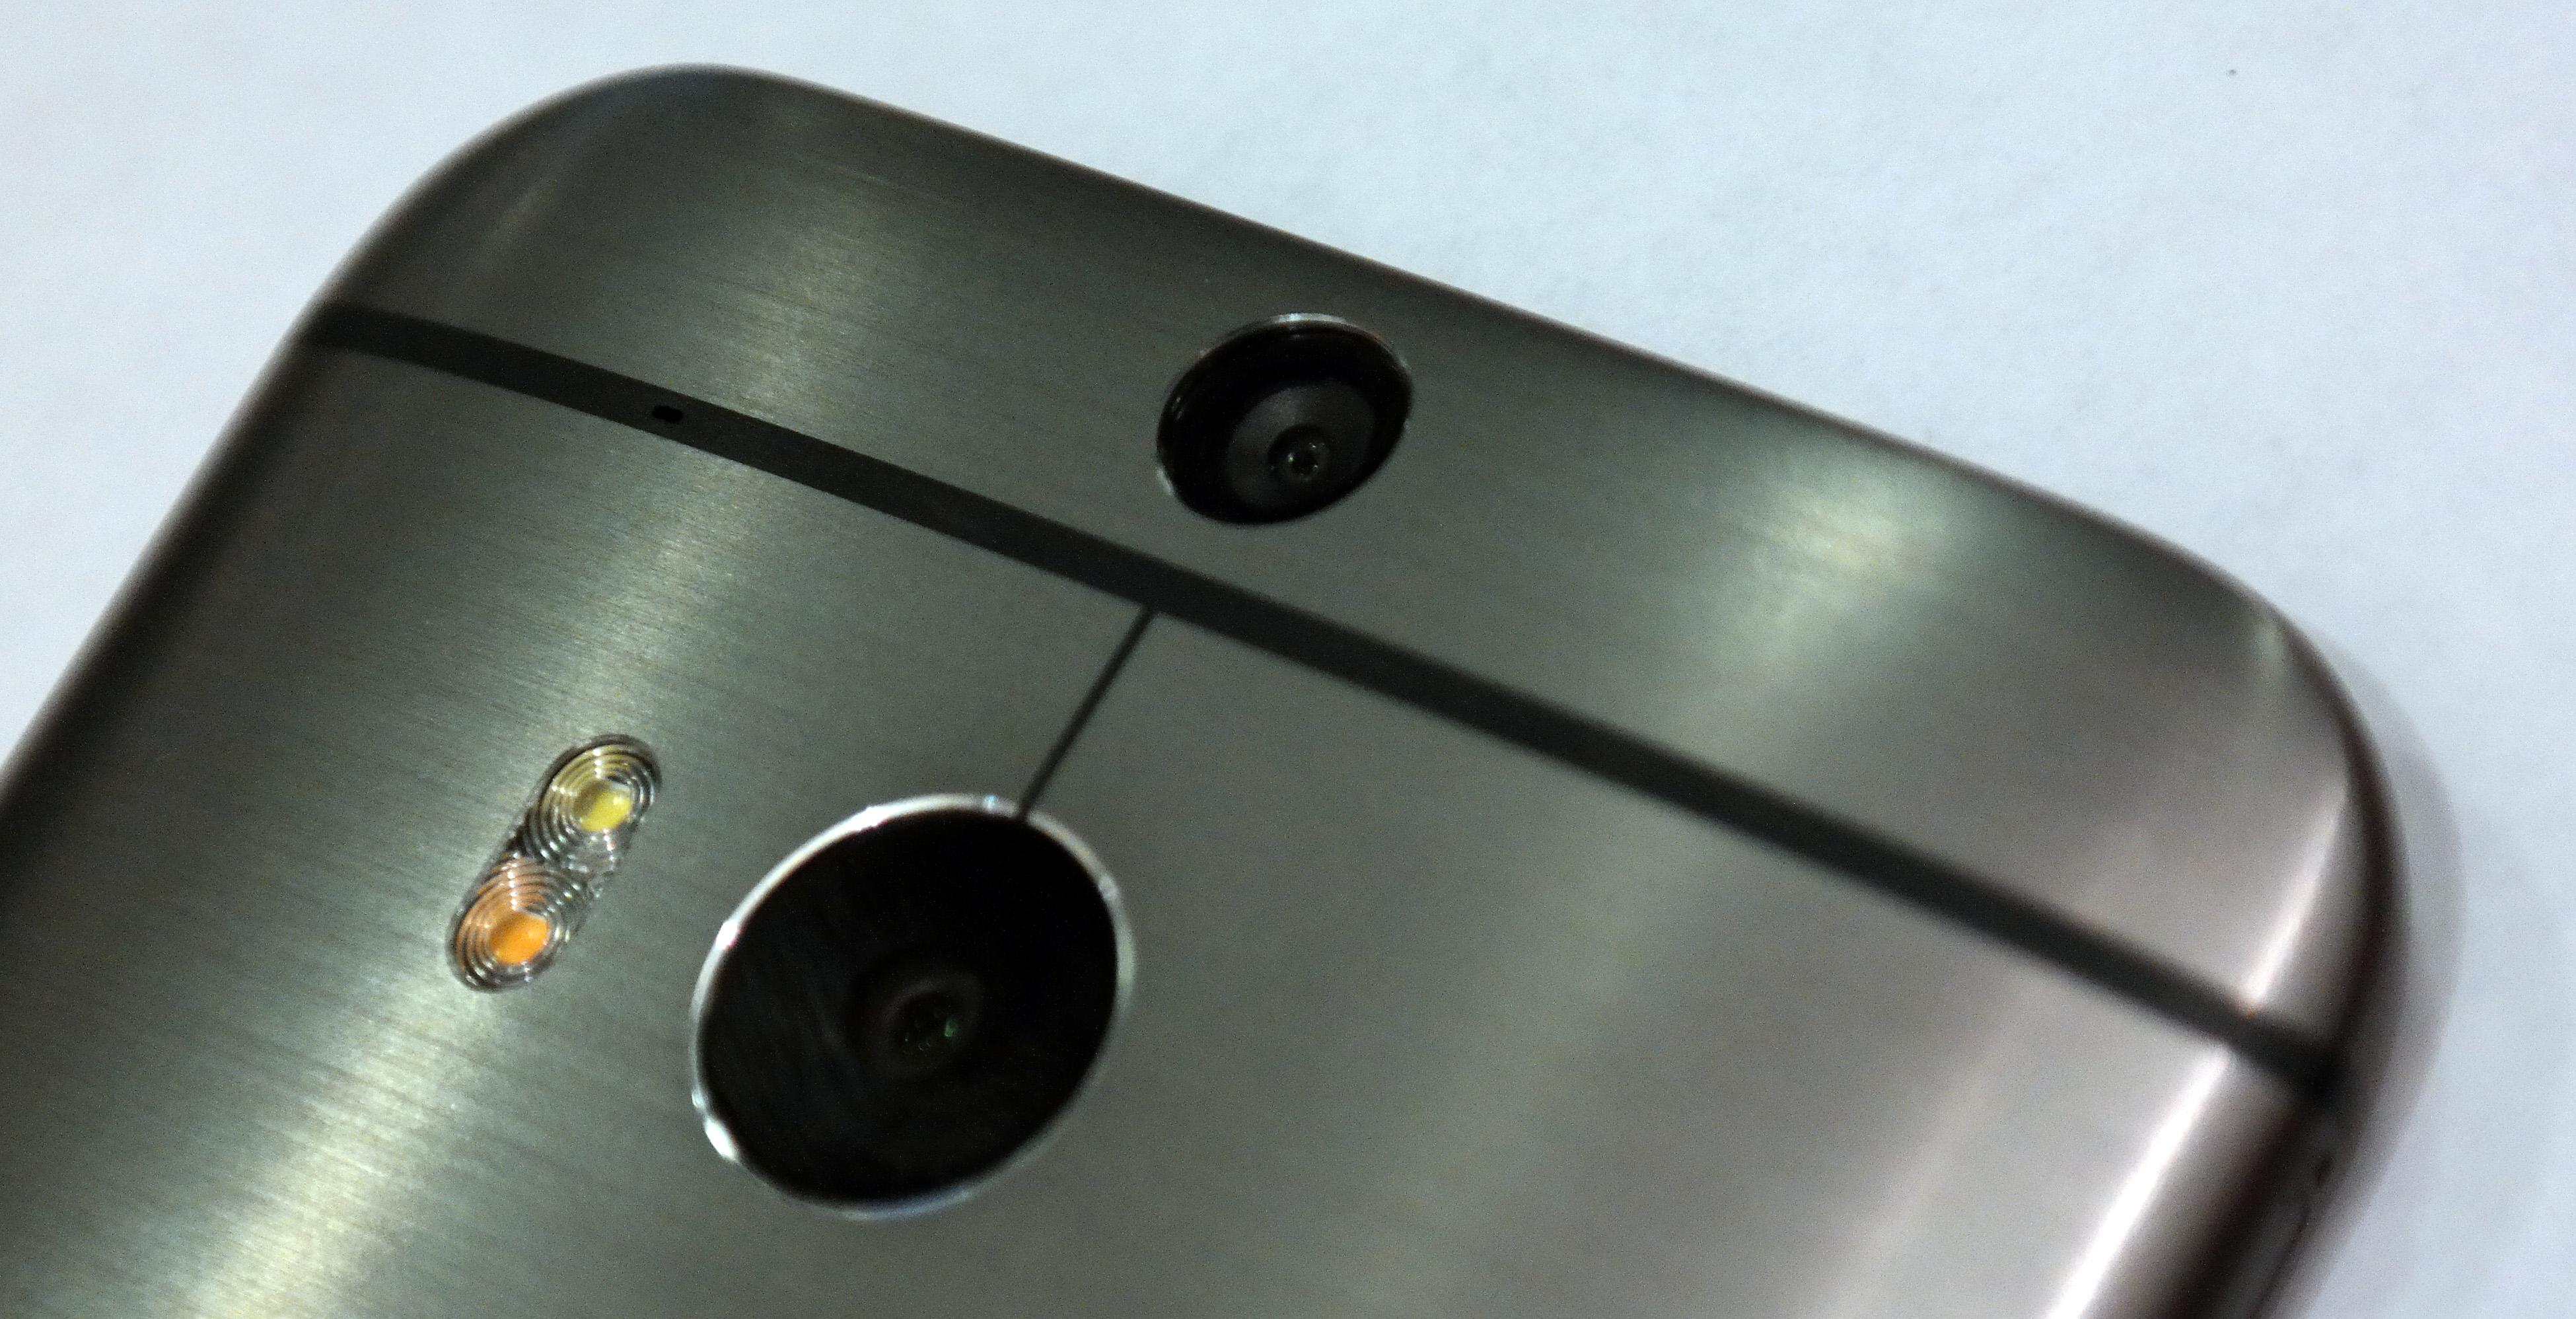 HTC One M8 har et nytt kamera. Men fremdeles er det bare på 4 megapiksler, der hver piksel kan ta inn 300 prosent mer lys enn pikslene på 16 megapikselkameraene kan.Foto: Espen Irwing Swang, Amobil.no